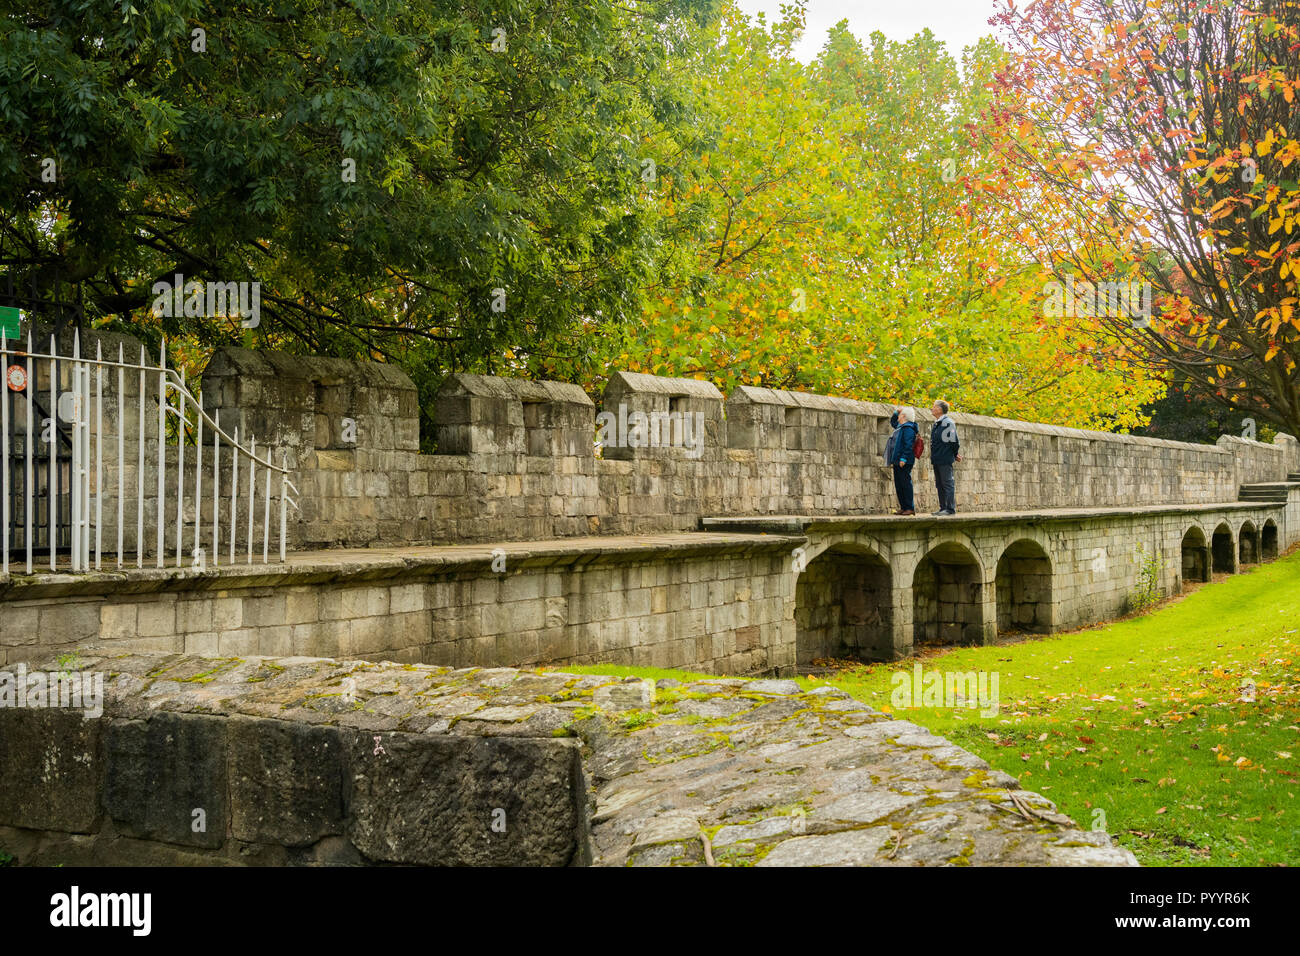 Herbsttag & Mann & Frau stehen zusammen und blicken vom Gehweg auf die wunderschöne historische mittelalterliche Stadtmauer von York - North Yorkshire, England, Großbritannien Stockfoto